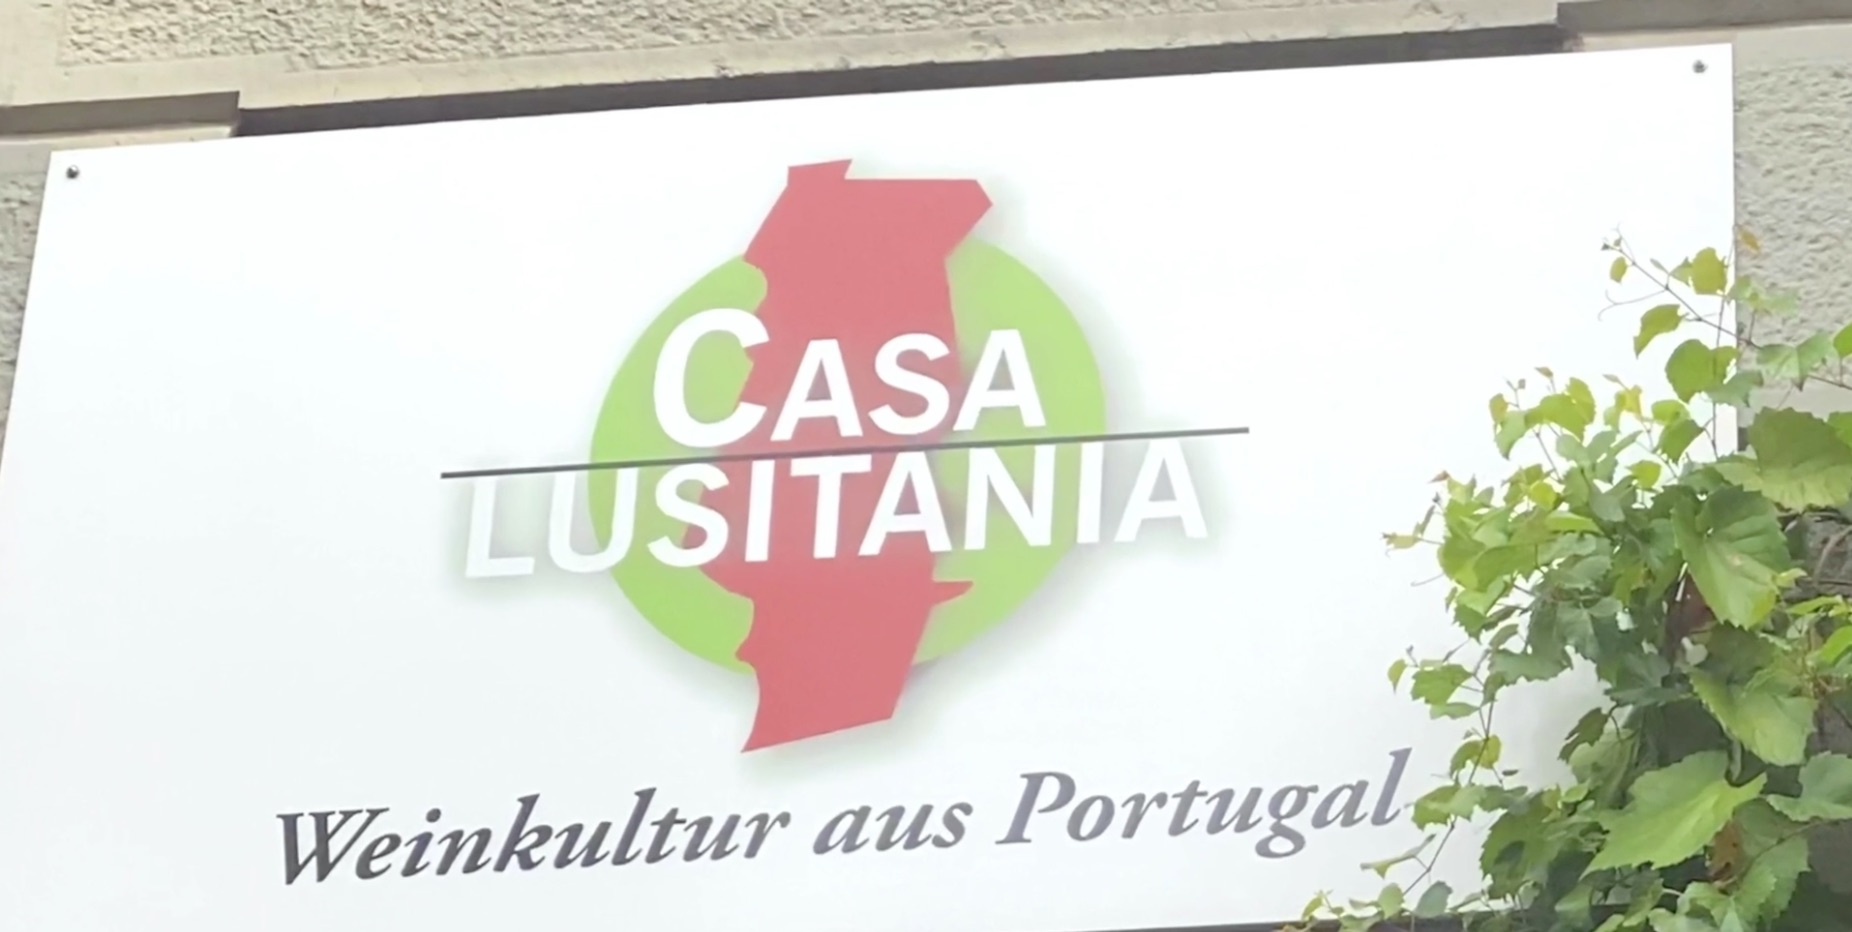 Als Detailhandelsspezialist das Casa Lusitania mit Weine von Portugal leiten